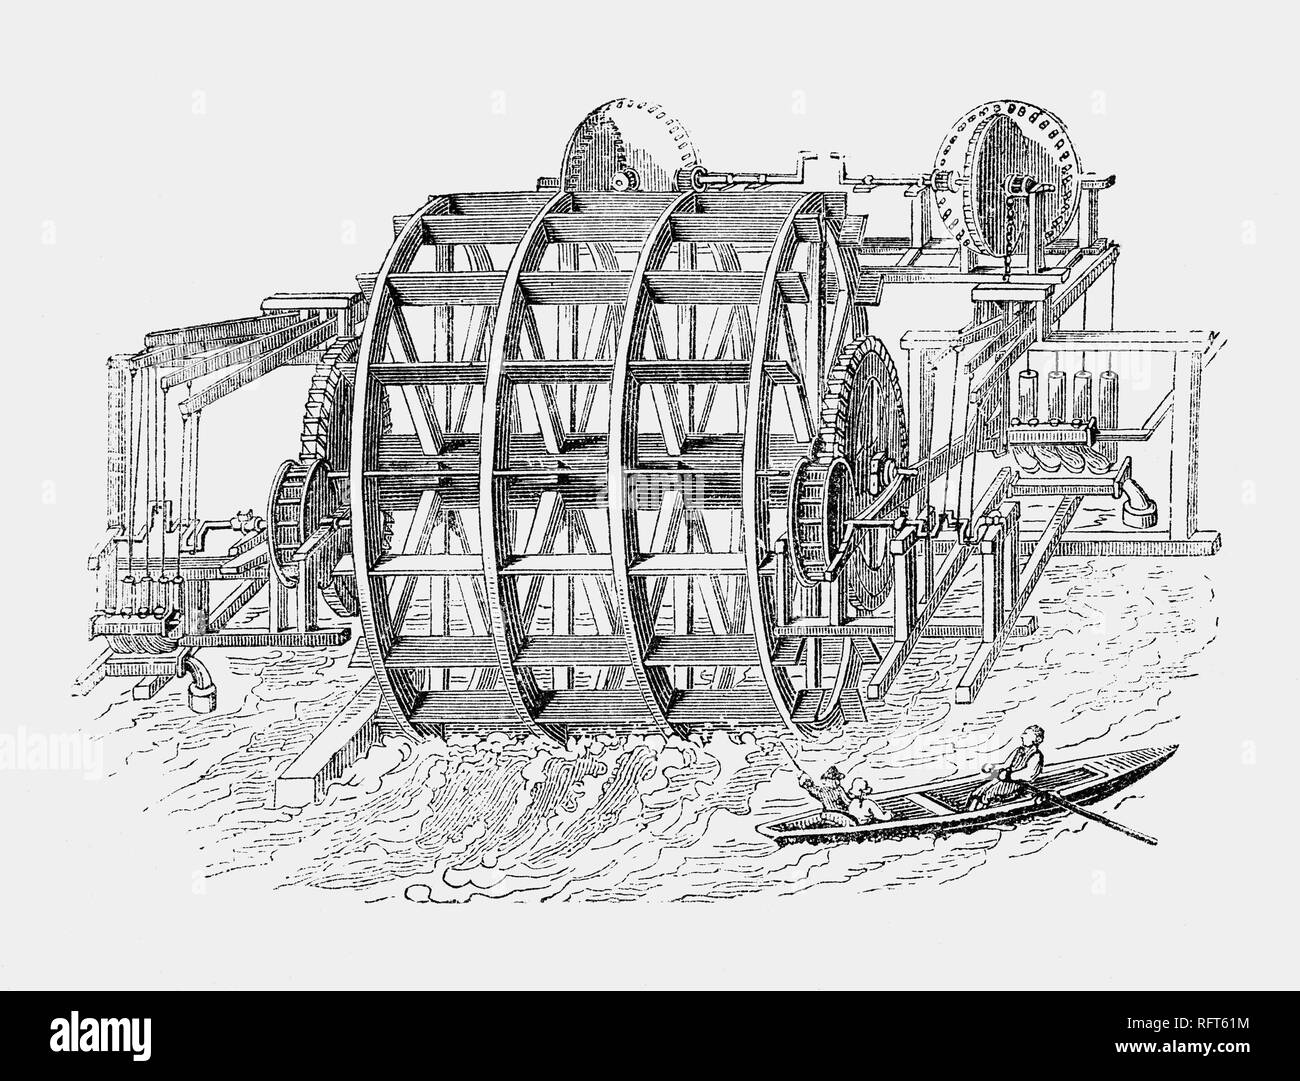 Le 24 décembre, en 1582, le Hollandais Pieter Maritz's London Bridge Waterworks a commencé à fournir de l'eau douce de la Tamise jusqu'à des maisons privées dans la ville de Londres. L'appareil de recherche-rachitique plutôt bien fonctionné, mais a été détruit dans le grand incendie de 1666. Remplacé par son petit-fils, continueing en usage jusqu'à la dépose du pont en 1822. L'aqueduc a été l'une des plus grandes entreprises de l'eau à Londres dont la croissance initiale était liée à l'expansion de la ville, mais limité dans le dix-huitième siècle parce que ses tuyaux n'a pas pu atteindre l'expansion des banlieues. Banque D'Images